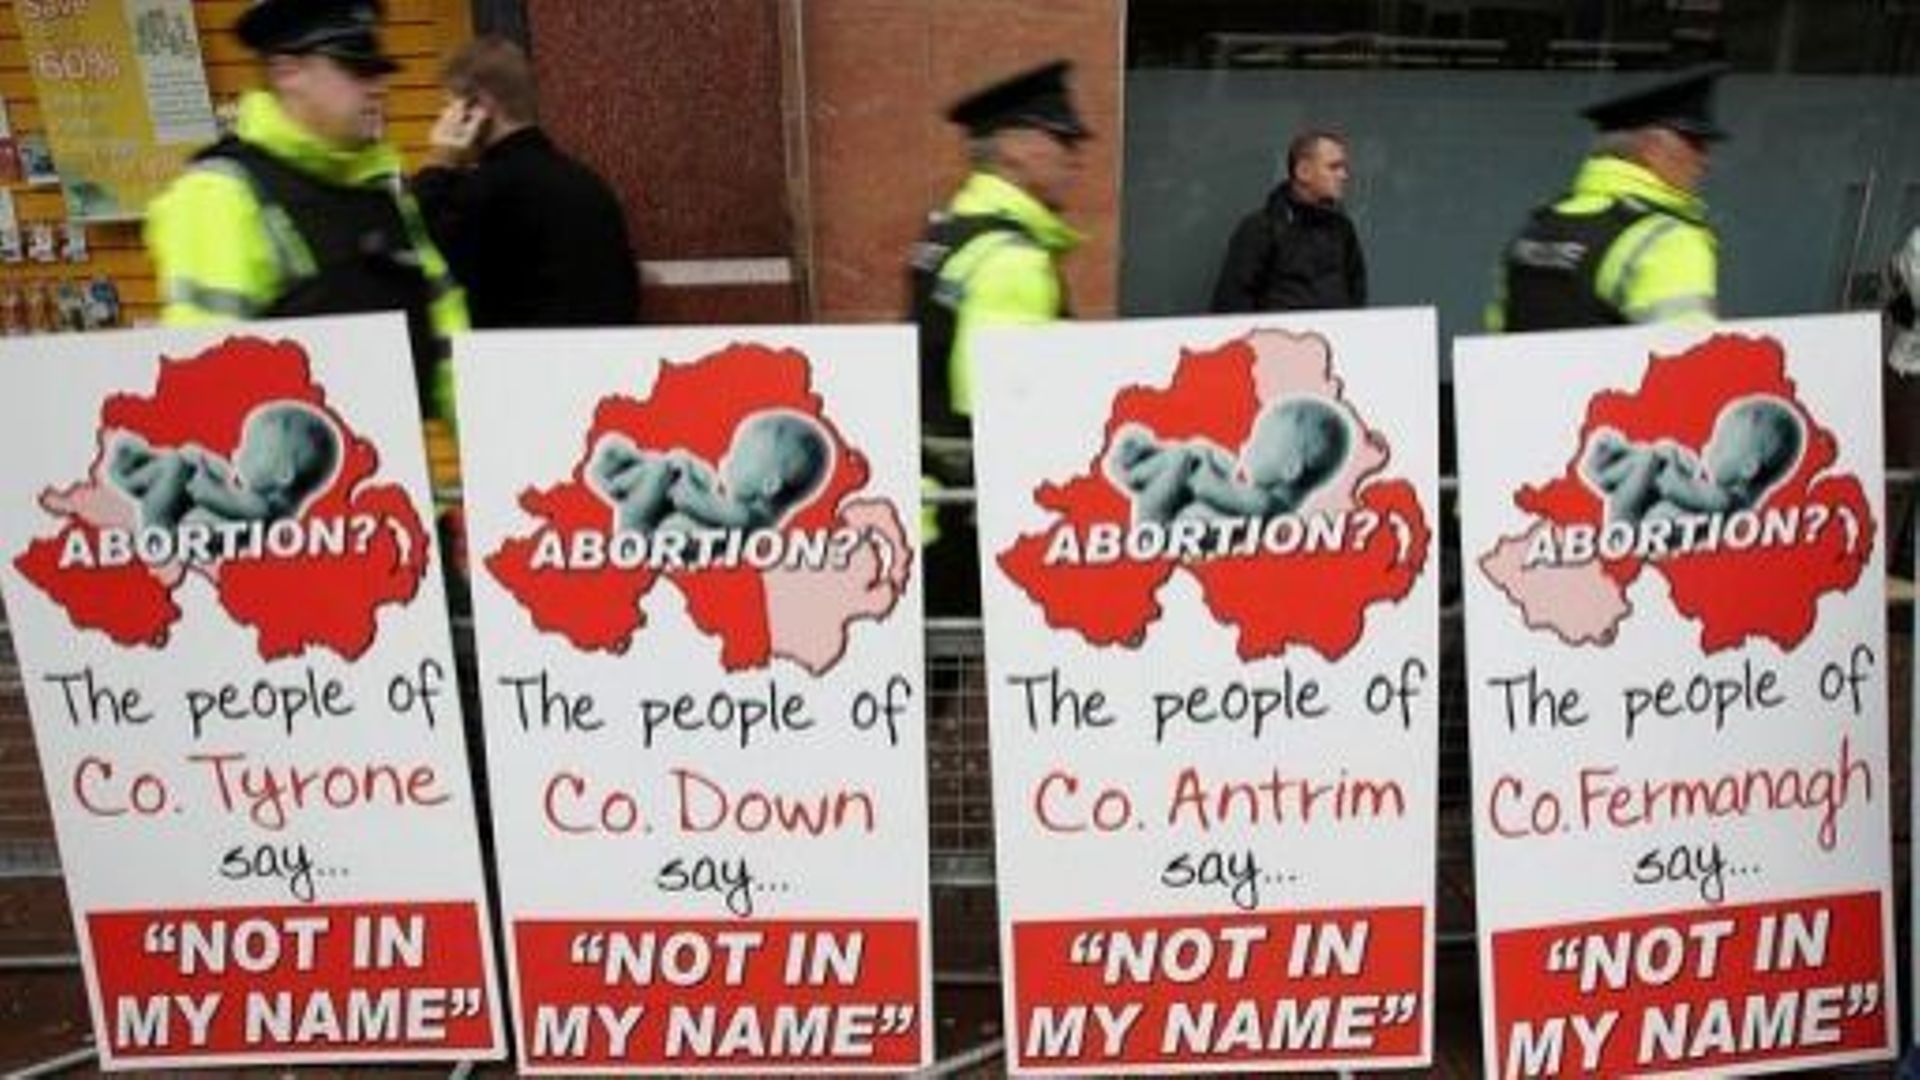 Des policiers marchent près d'affiches placardées par des opposants à l'avortement, le 18 octobre 2012 à Belfast